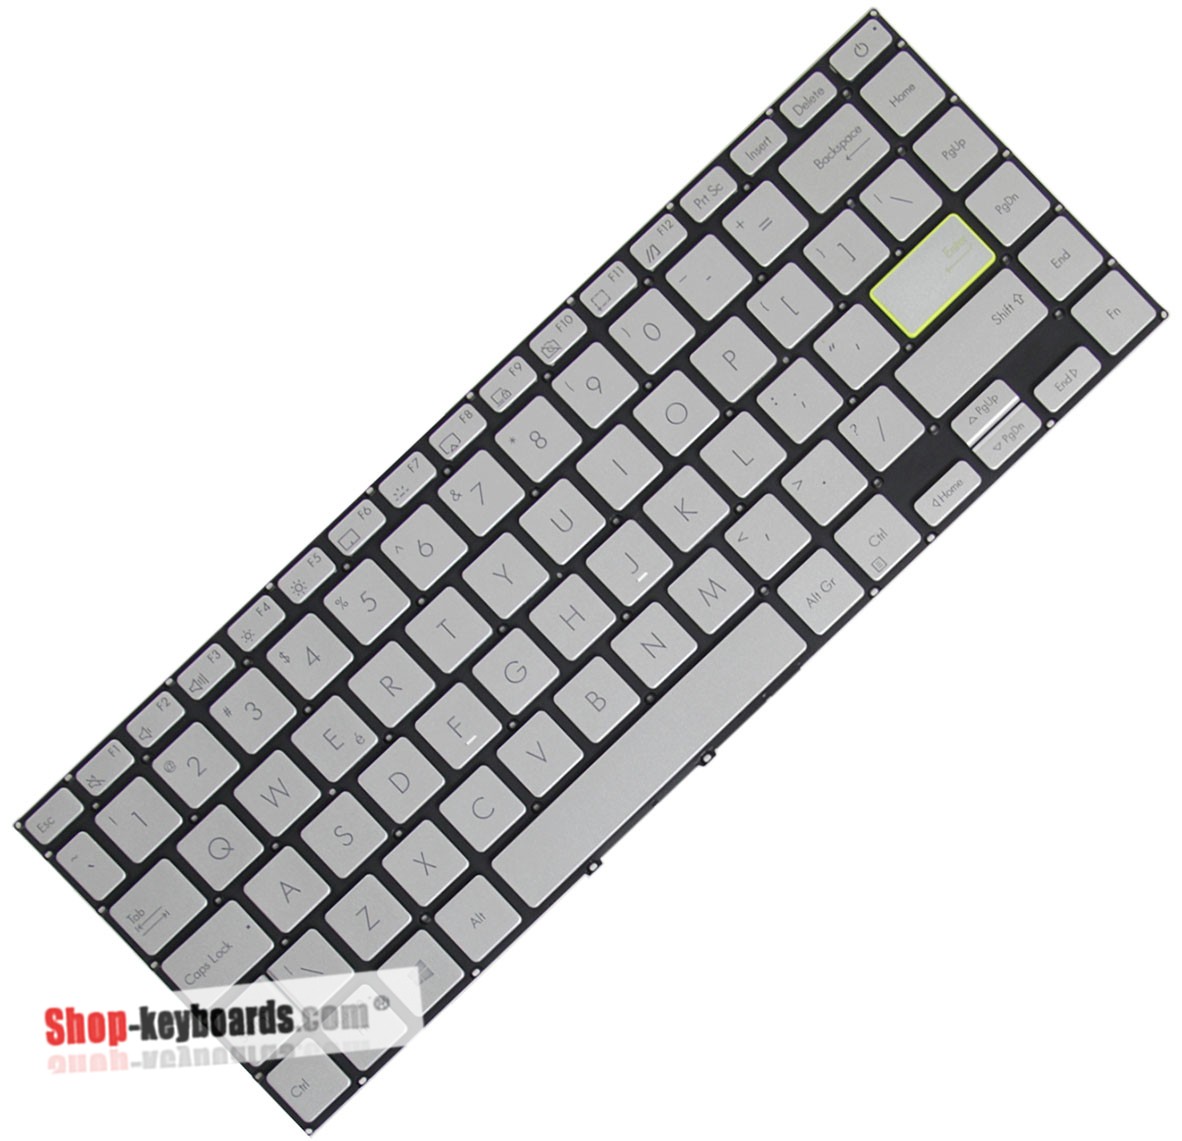 Asus AEXKSJ01150  Keyboard replacement